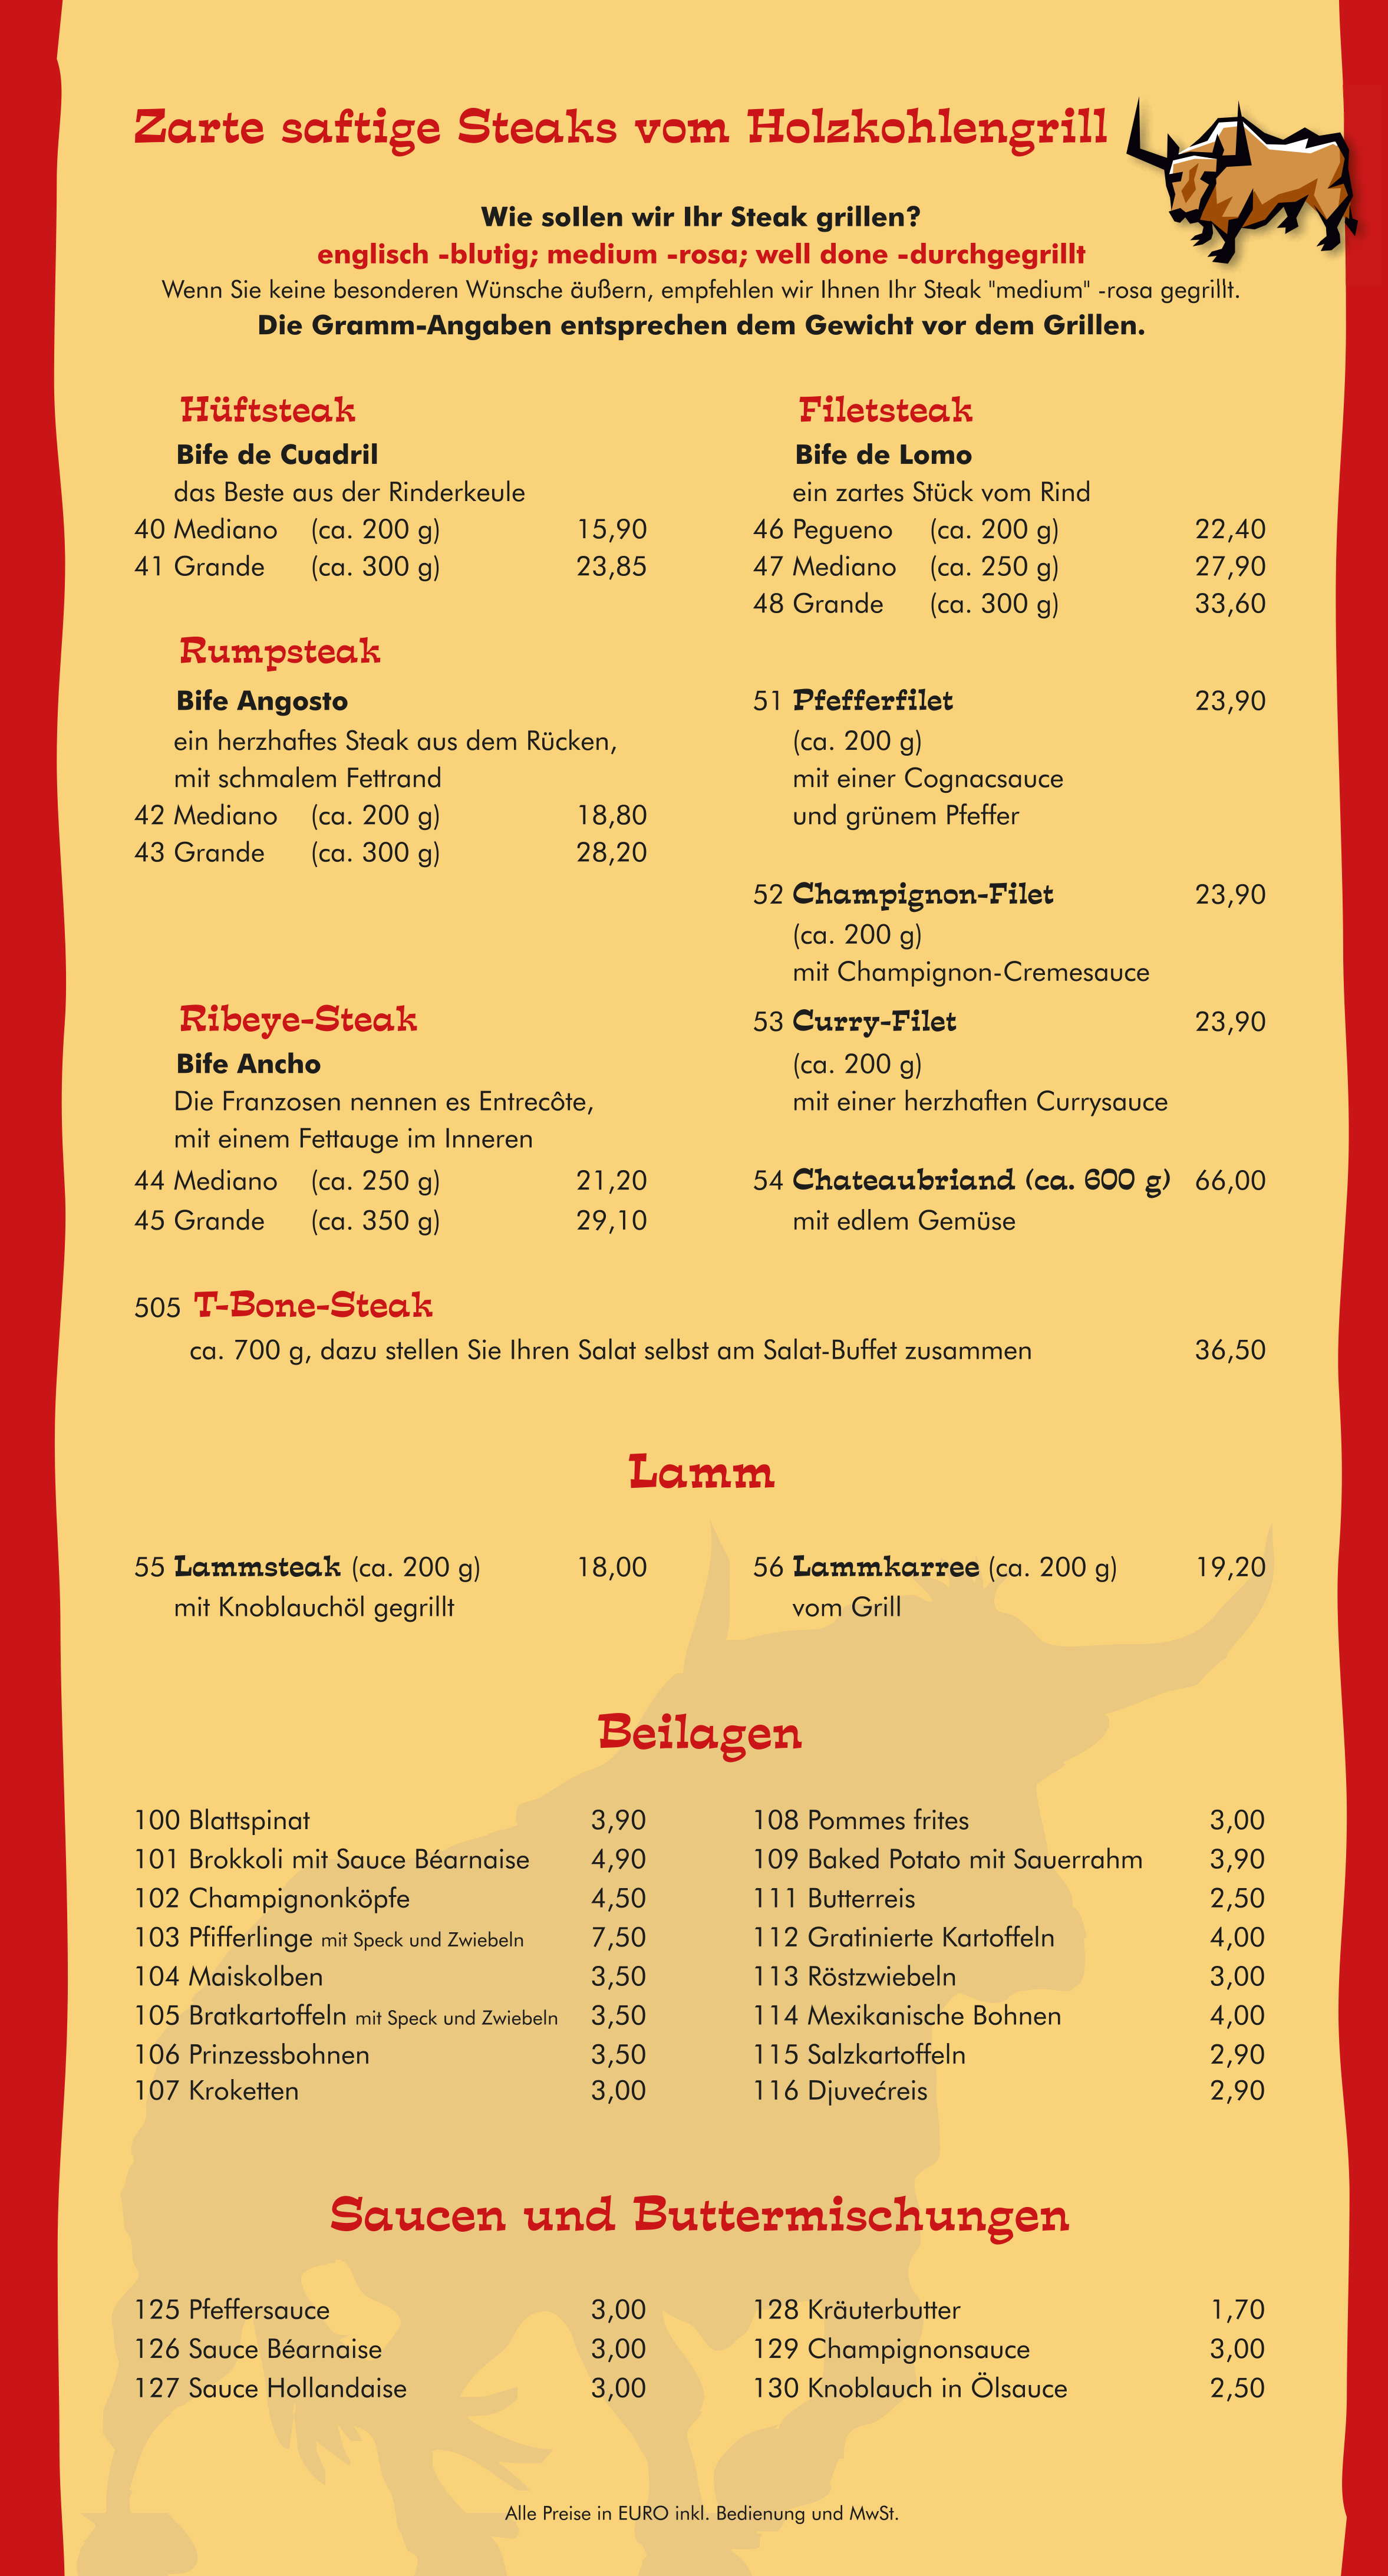 Seite 3 von 6 der Speisekarte vom El-Rancho Steakhouse in Bochum